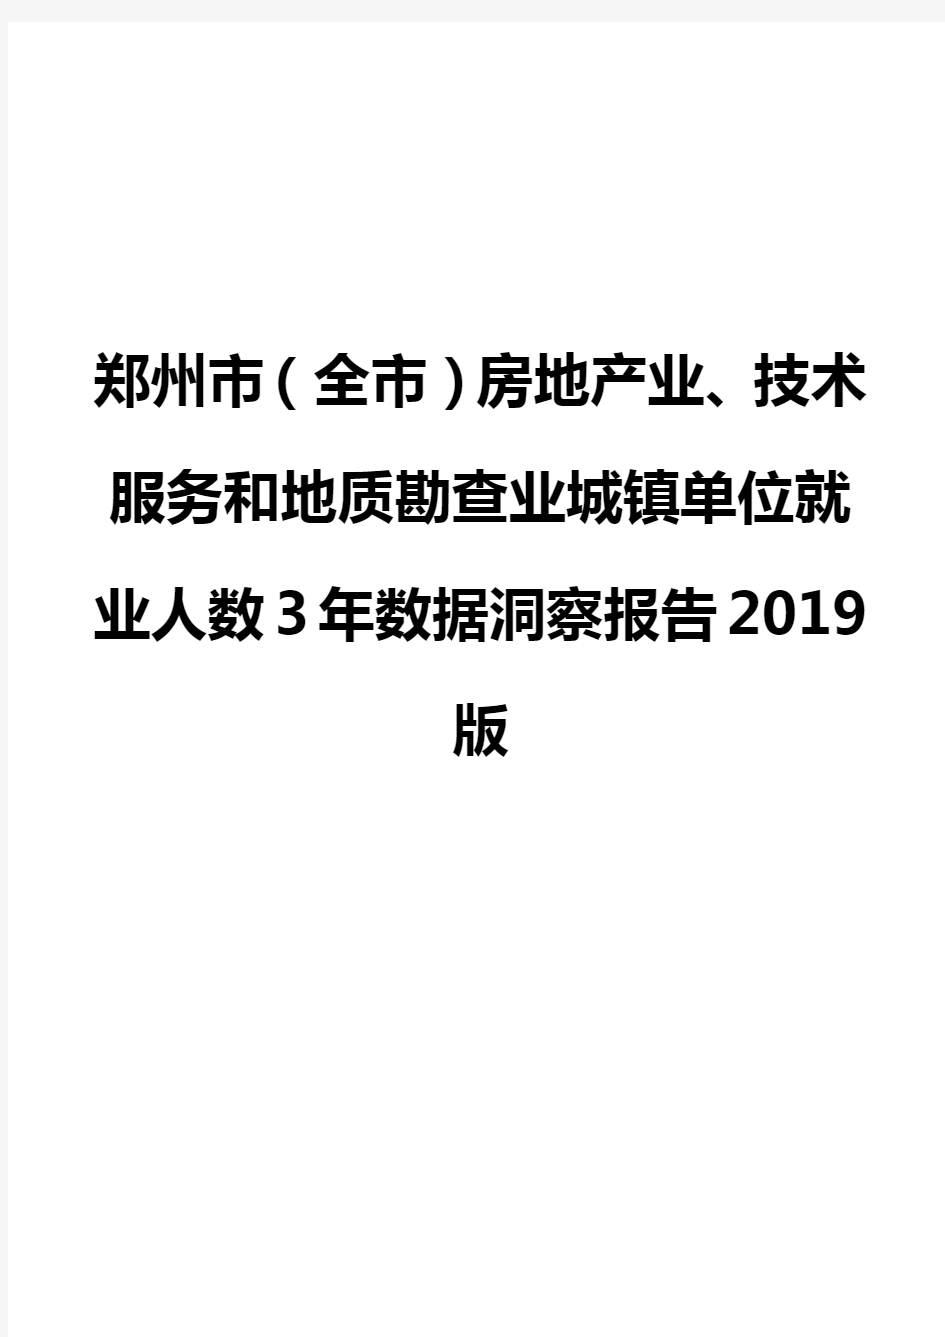 郑州市(全市)房地产业、技术服务和地质勘查业城镇单位就业人数3年数据洞察报告2019版